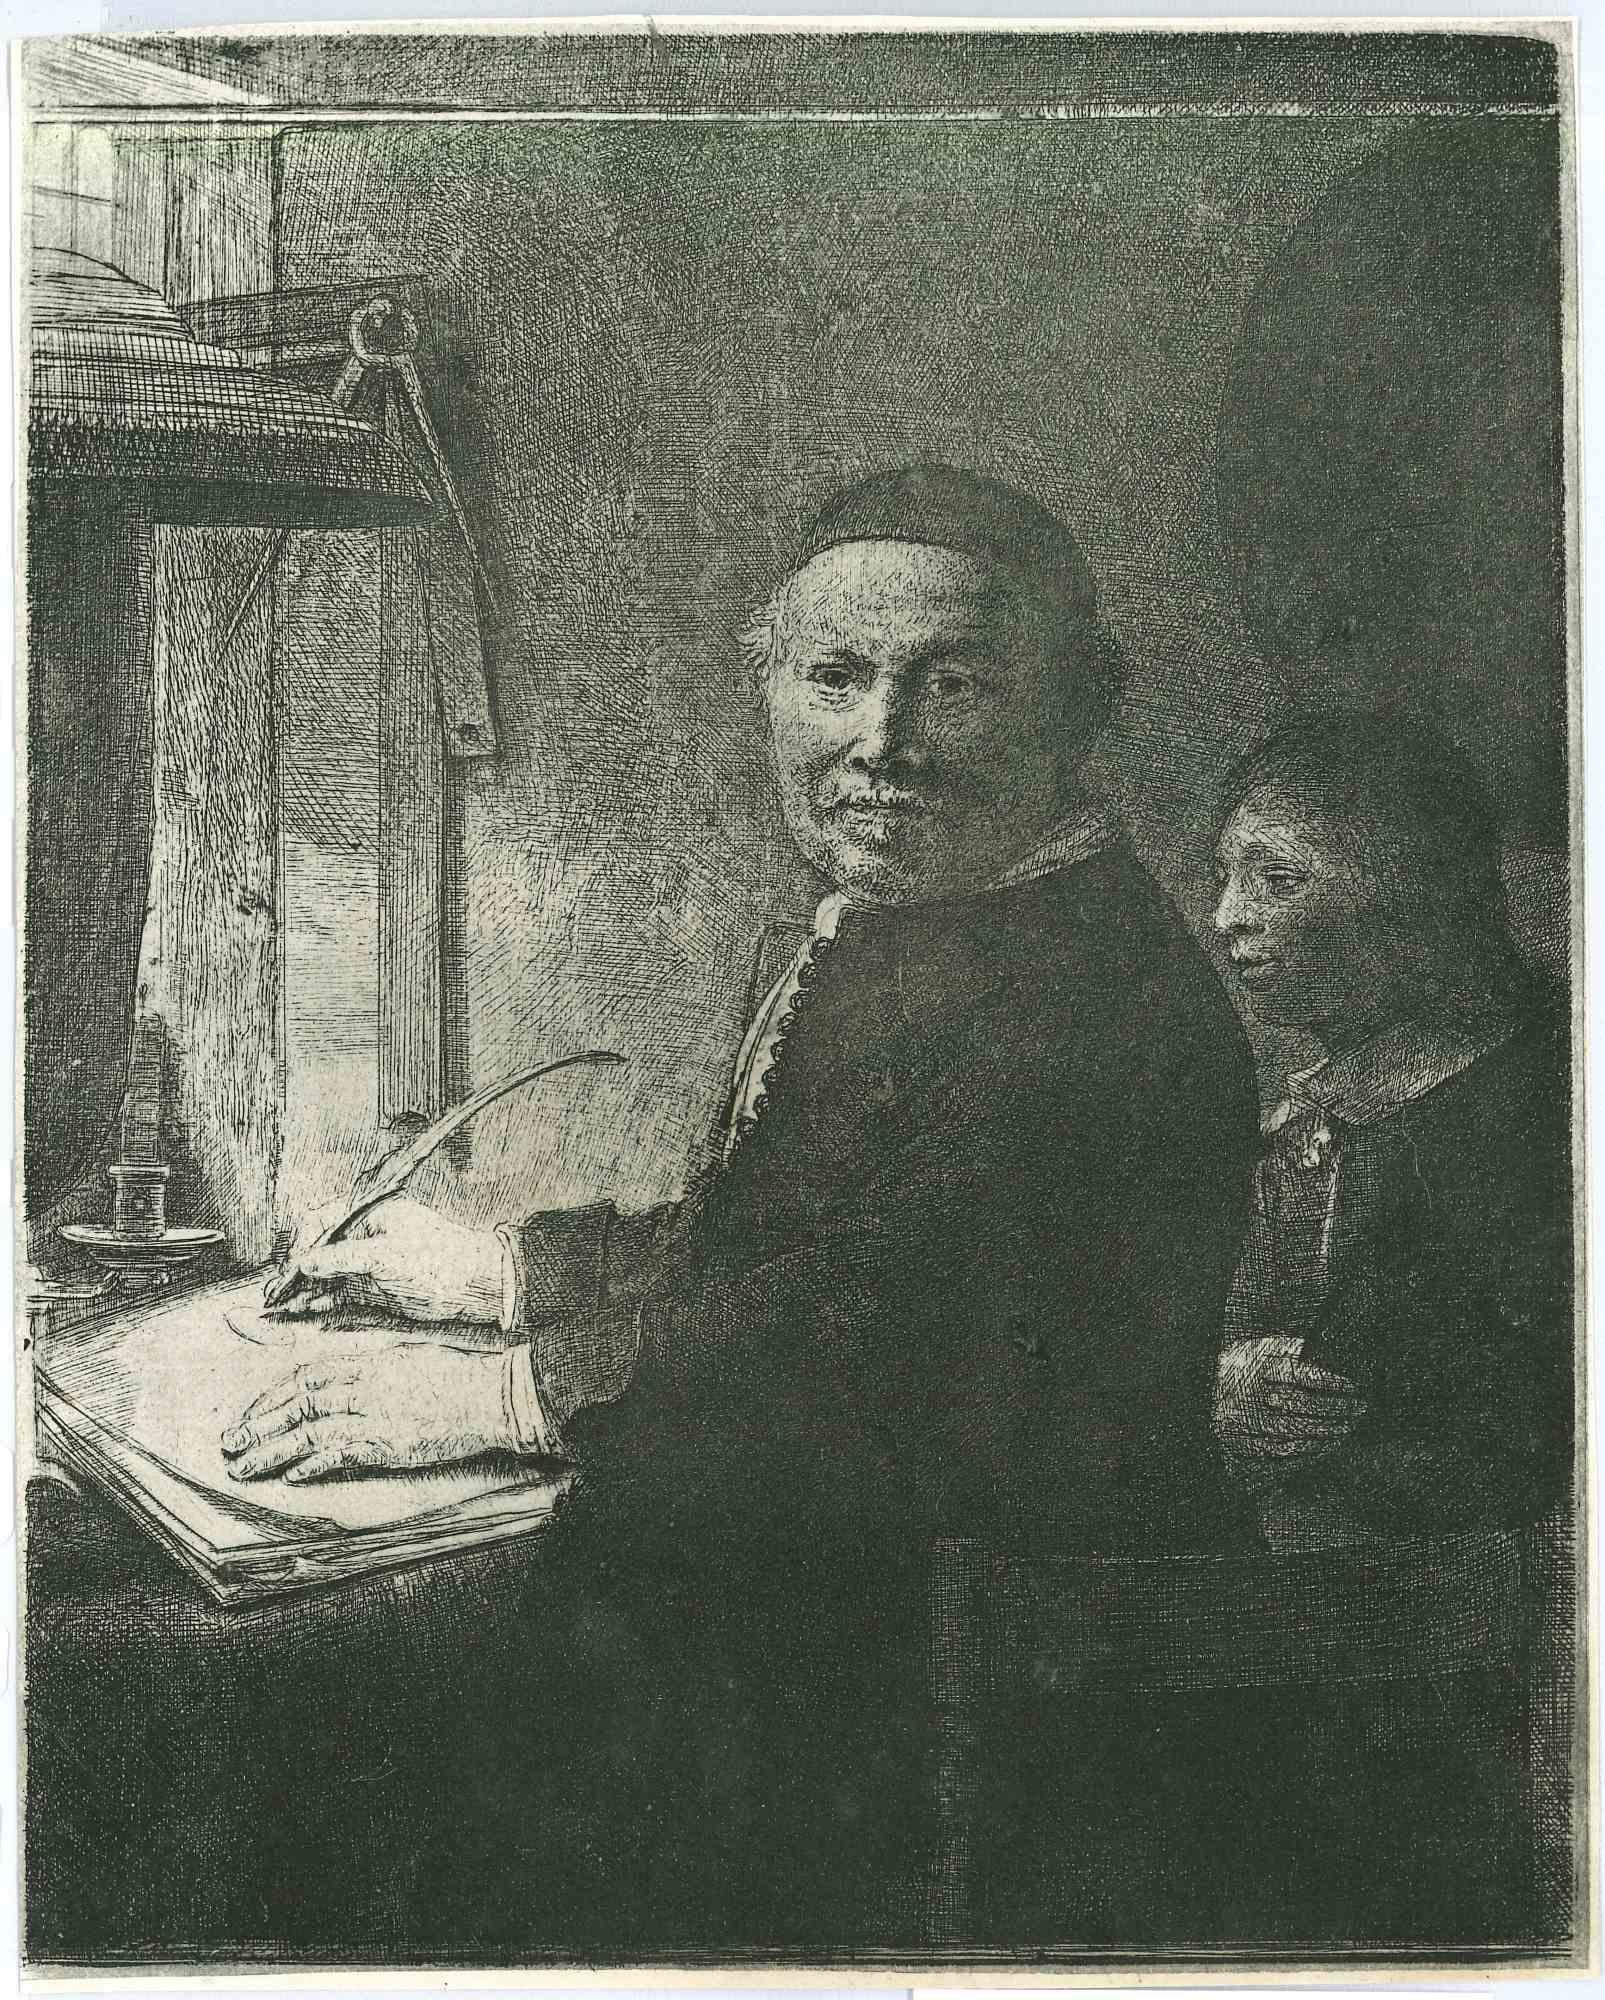 Charles Amand Durand Portrait Print - Lieven Willemsz van Coppenol - Engraving after Rembrandt - 19th Century